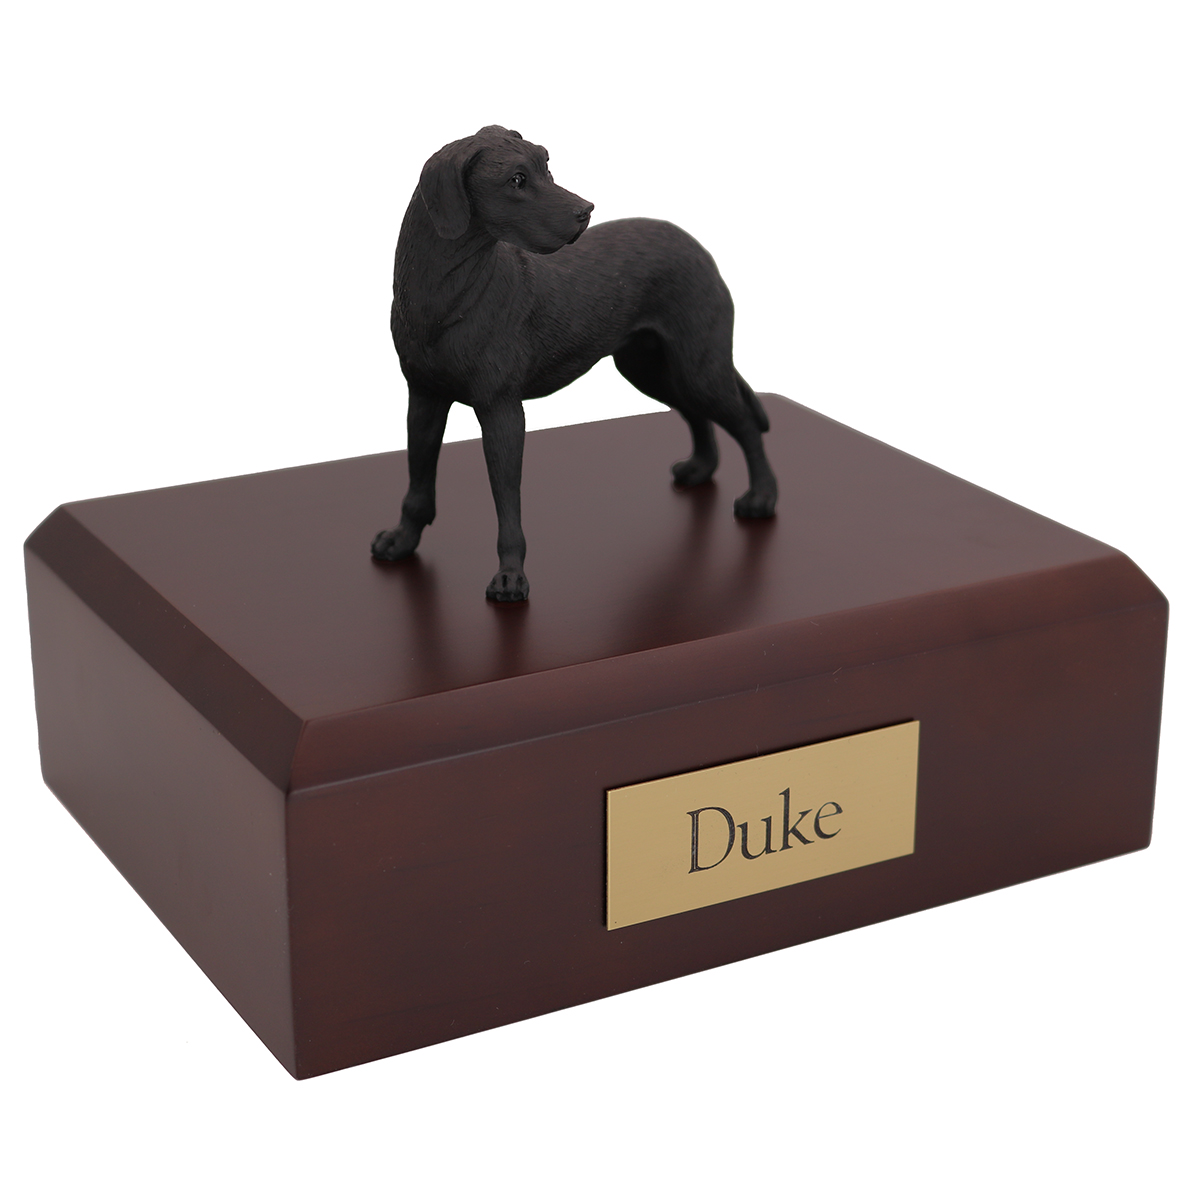 Dog, Great Dane, Black - ears down - Figurine Urn